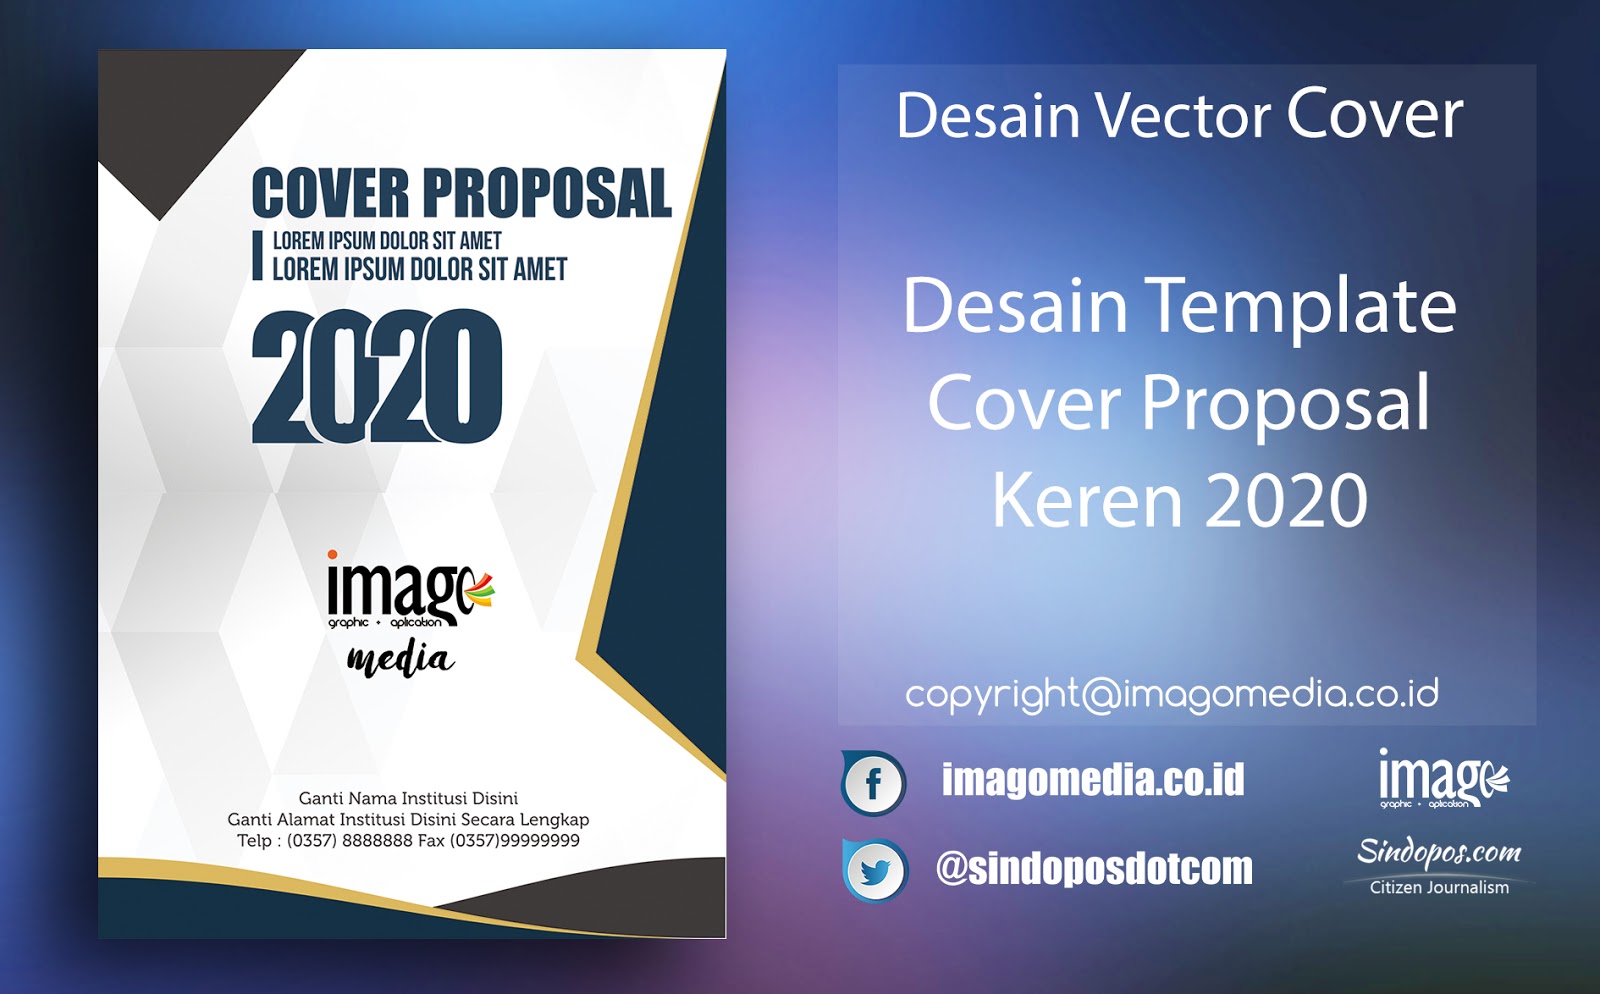 Desain Template Cover Proposal Kegiatan Terbaru 2022 